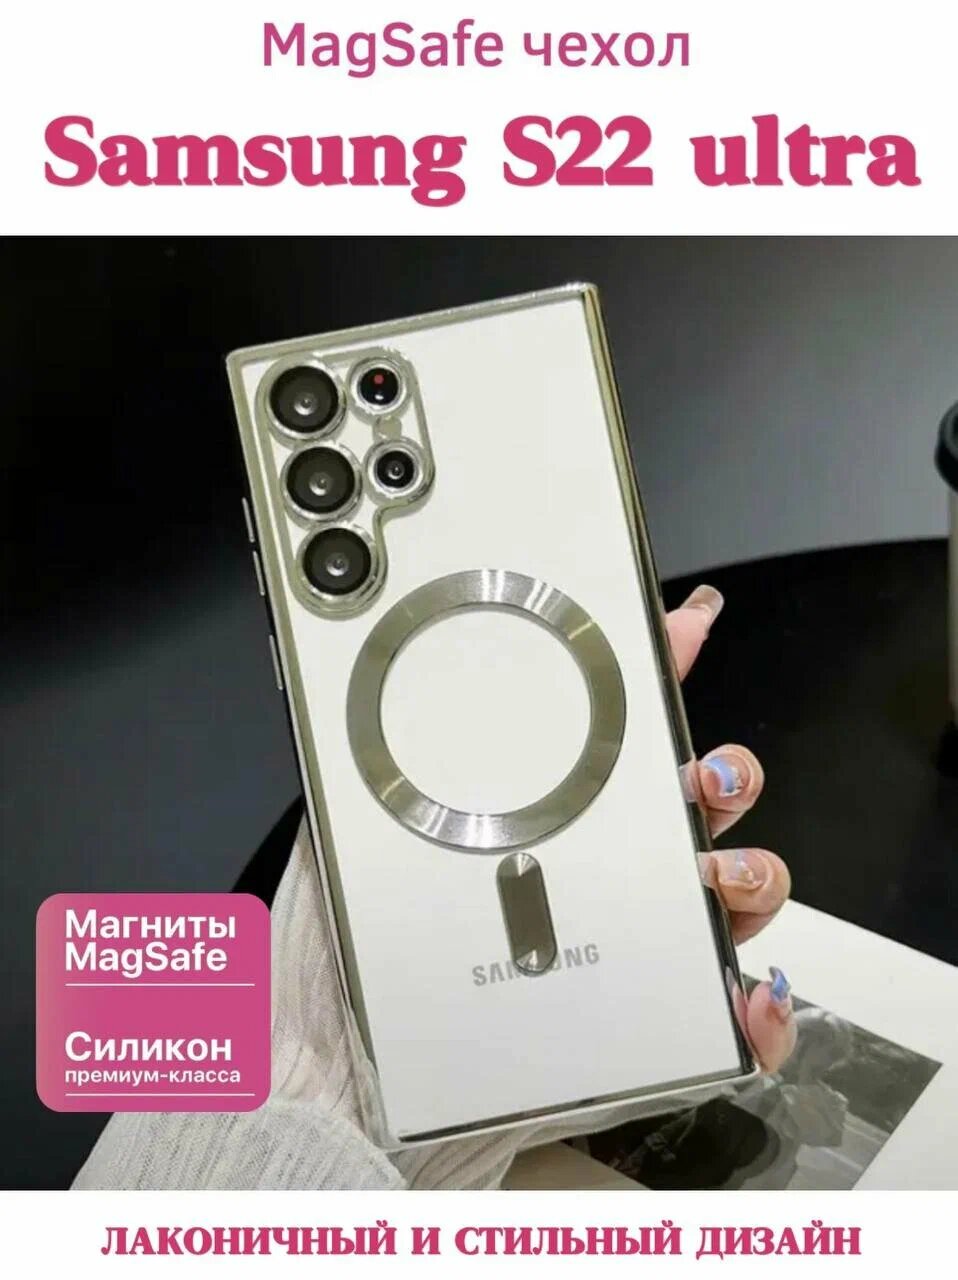 Чехол для Samsung Galaxy S22 Ultra c магнитным кольцом MagSafe nbnfy (самсунг с22 ультра) с защитой камеры ( линз)